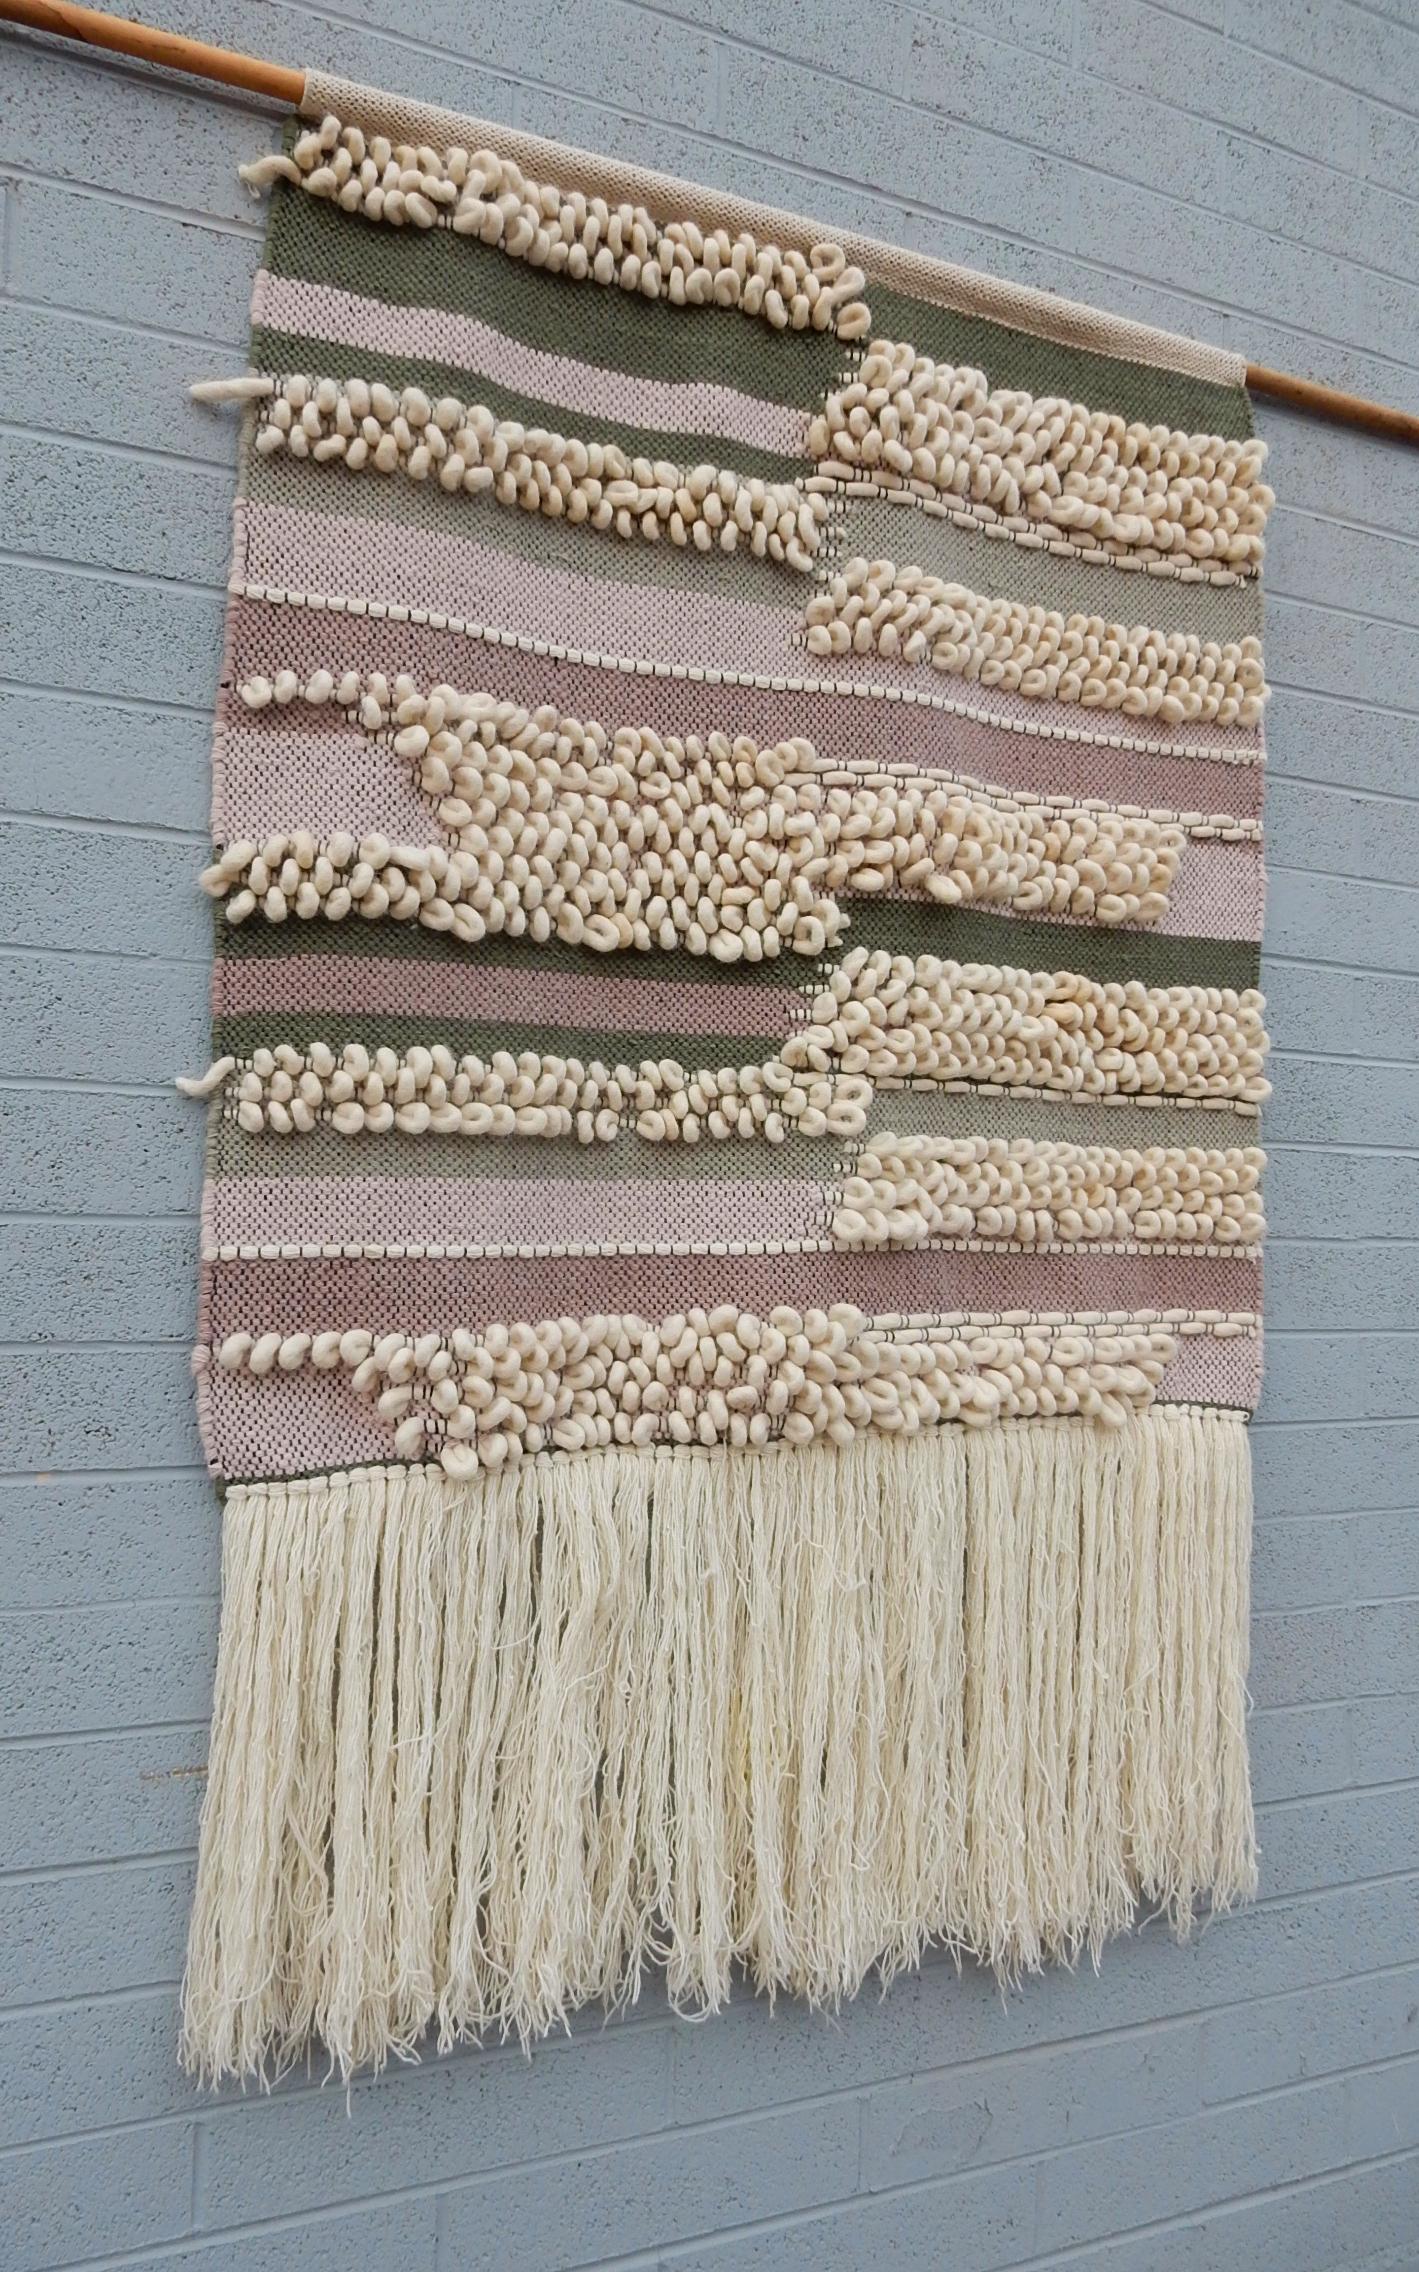 Großes, 5+' X 4' großes abstraktes Textilkunstgeflecht, aufgereiht an einem Holzstab.
Lange Fransen unten. Warme Farbtöne.
Nicht signiert oder gekennzeichnet, ca. 1980er Jahre.